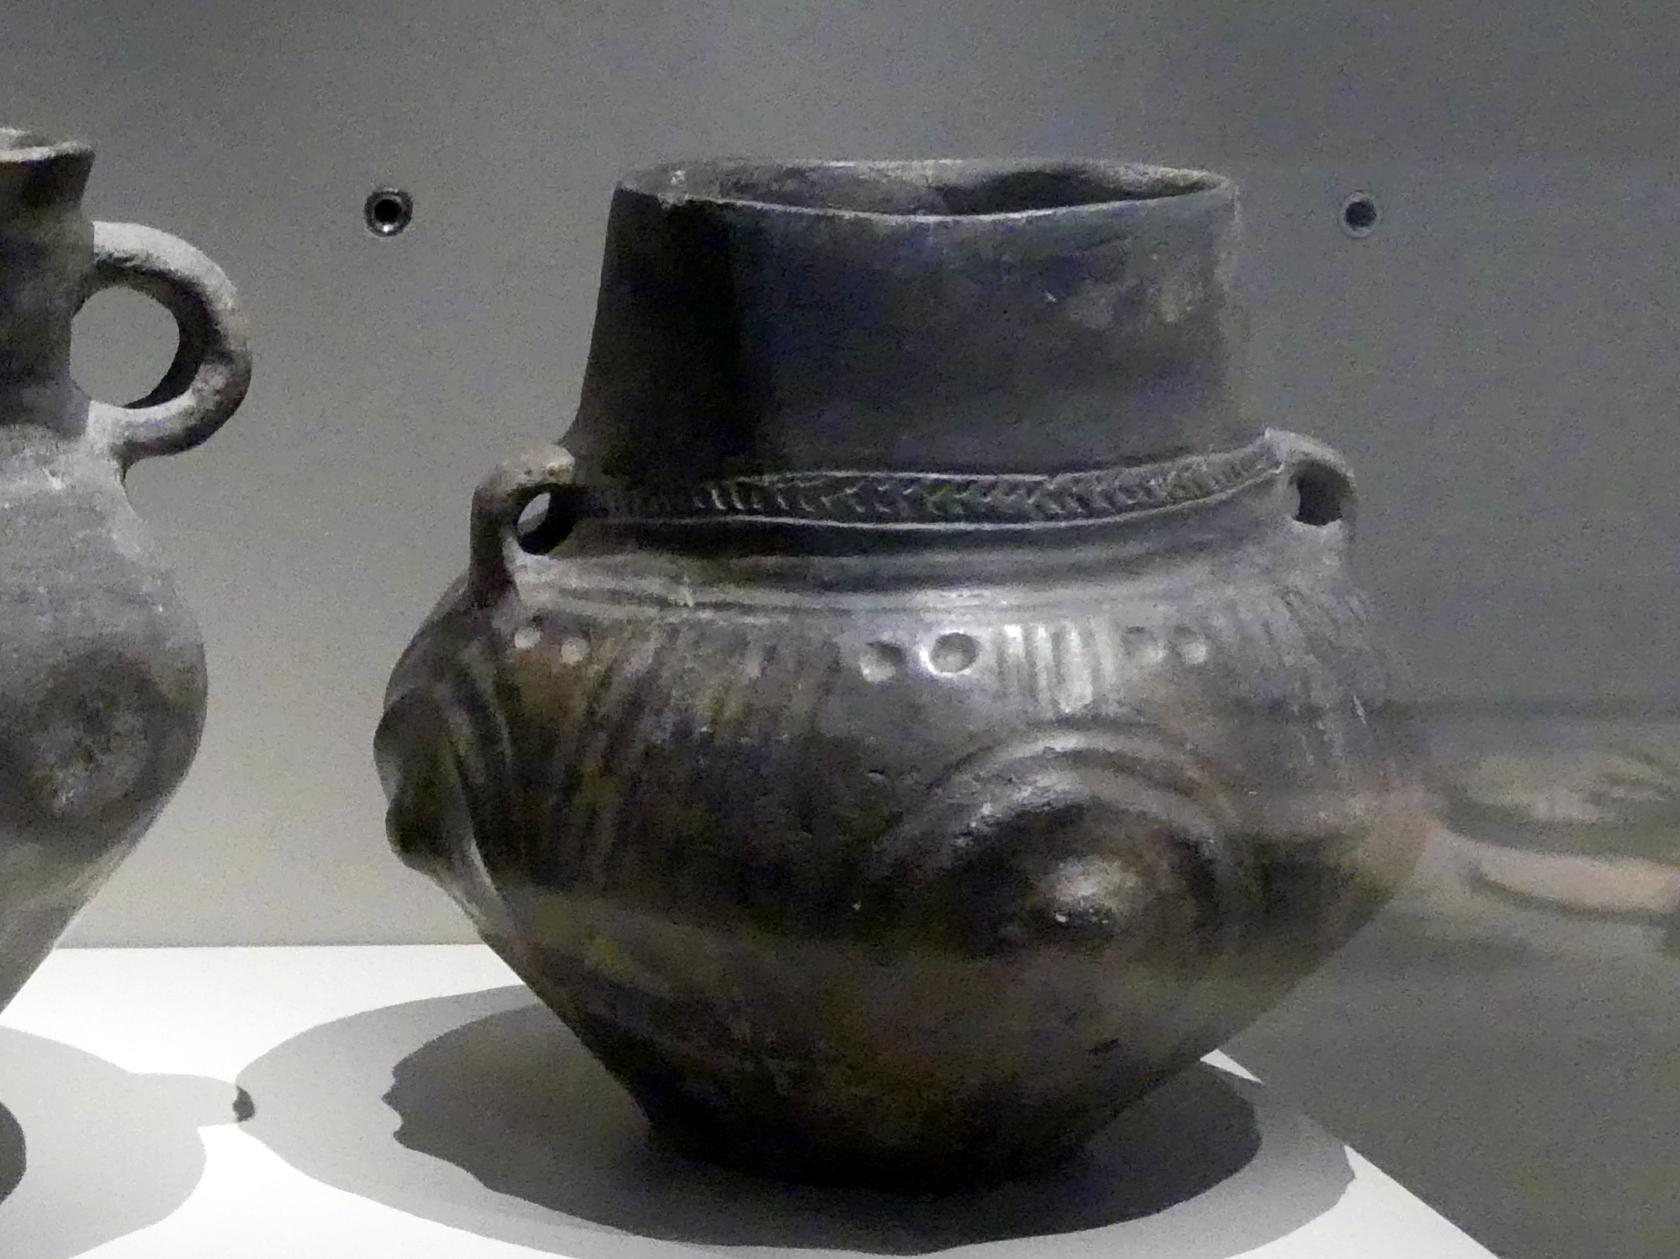 Topf, Buckel und Kannelur, Nordische Bronzezeit, 1200 - 700 v. Chr., 1200 - 1000 v. Chr.